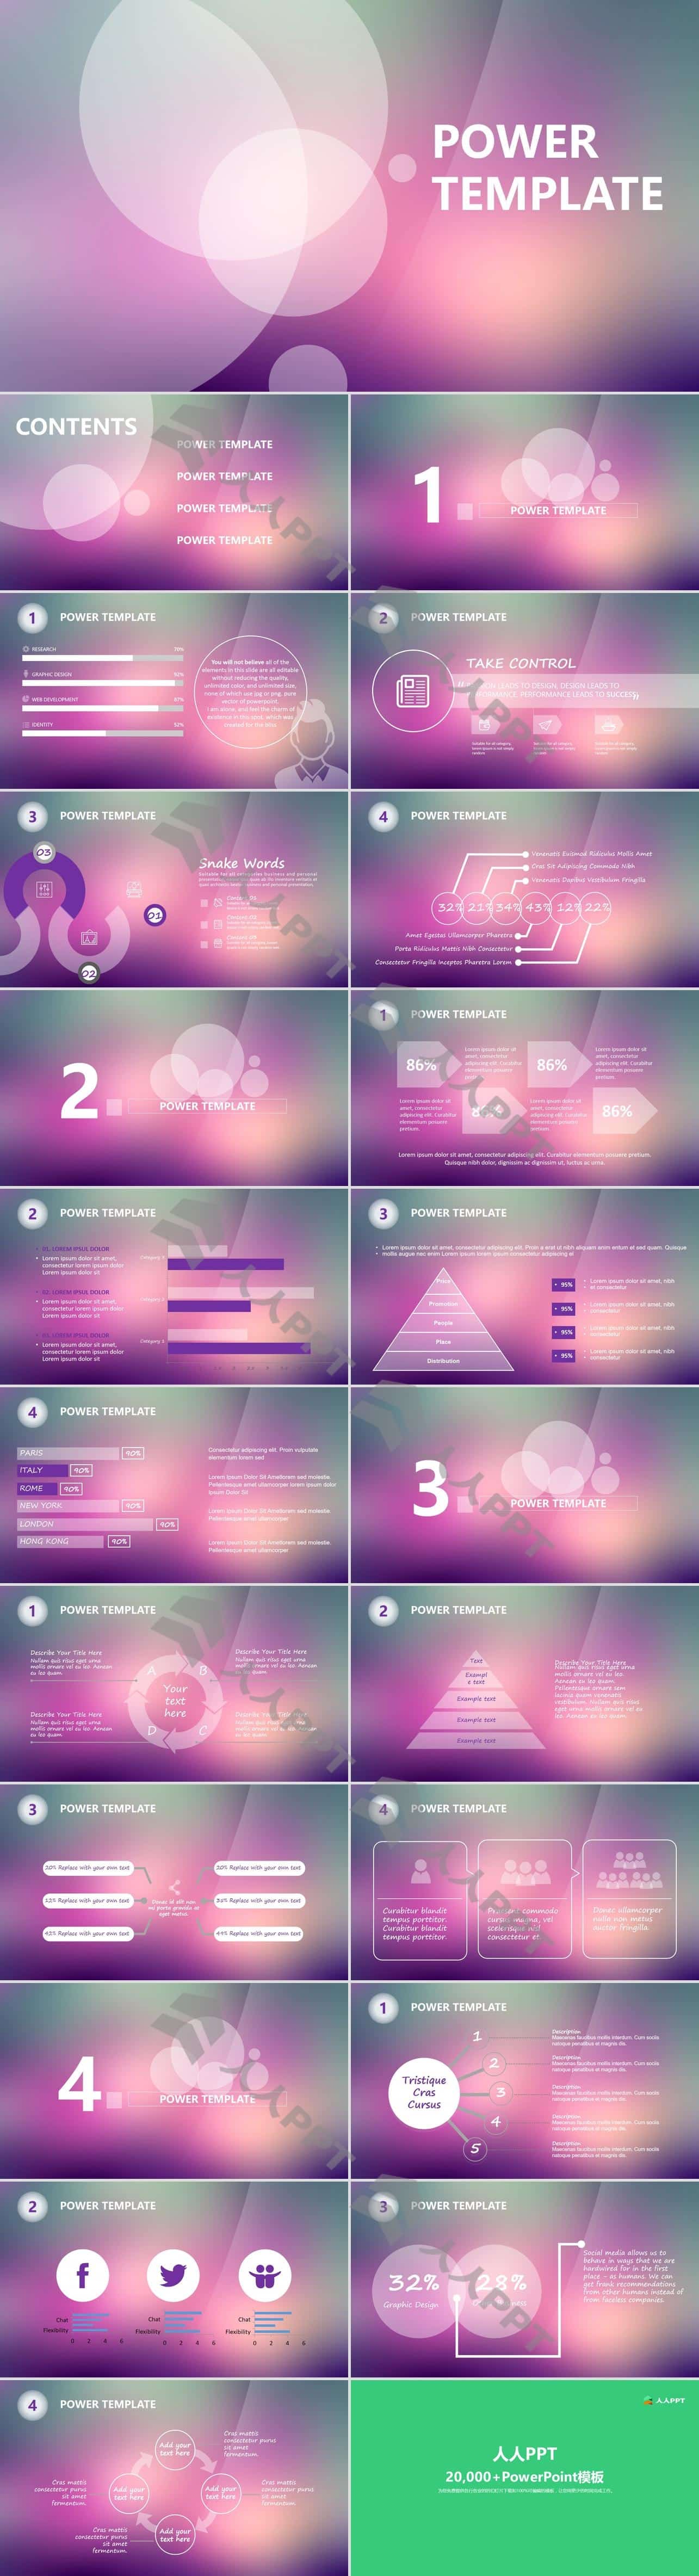 半透明圆创意封面朦胧紫背景简约iOS风格PPT模板长图